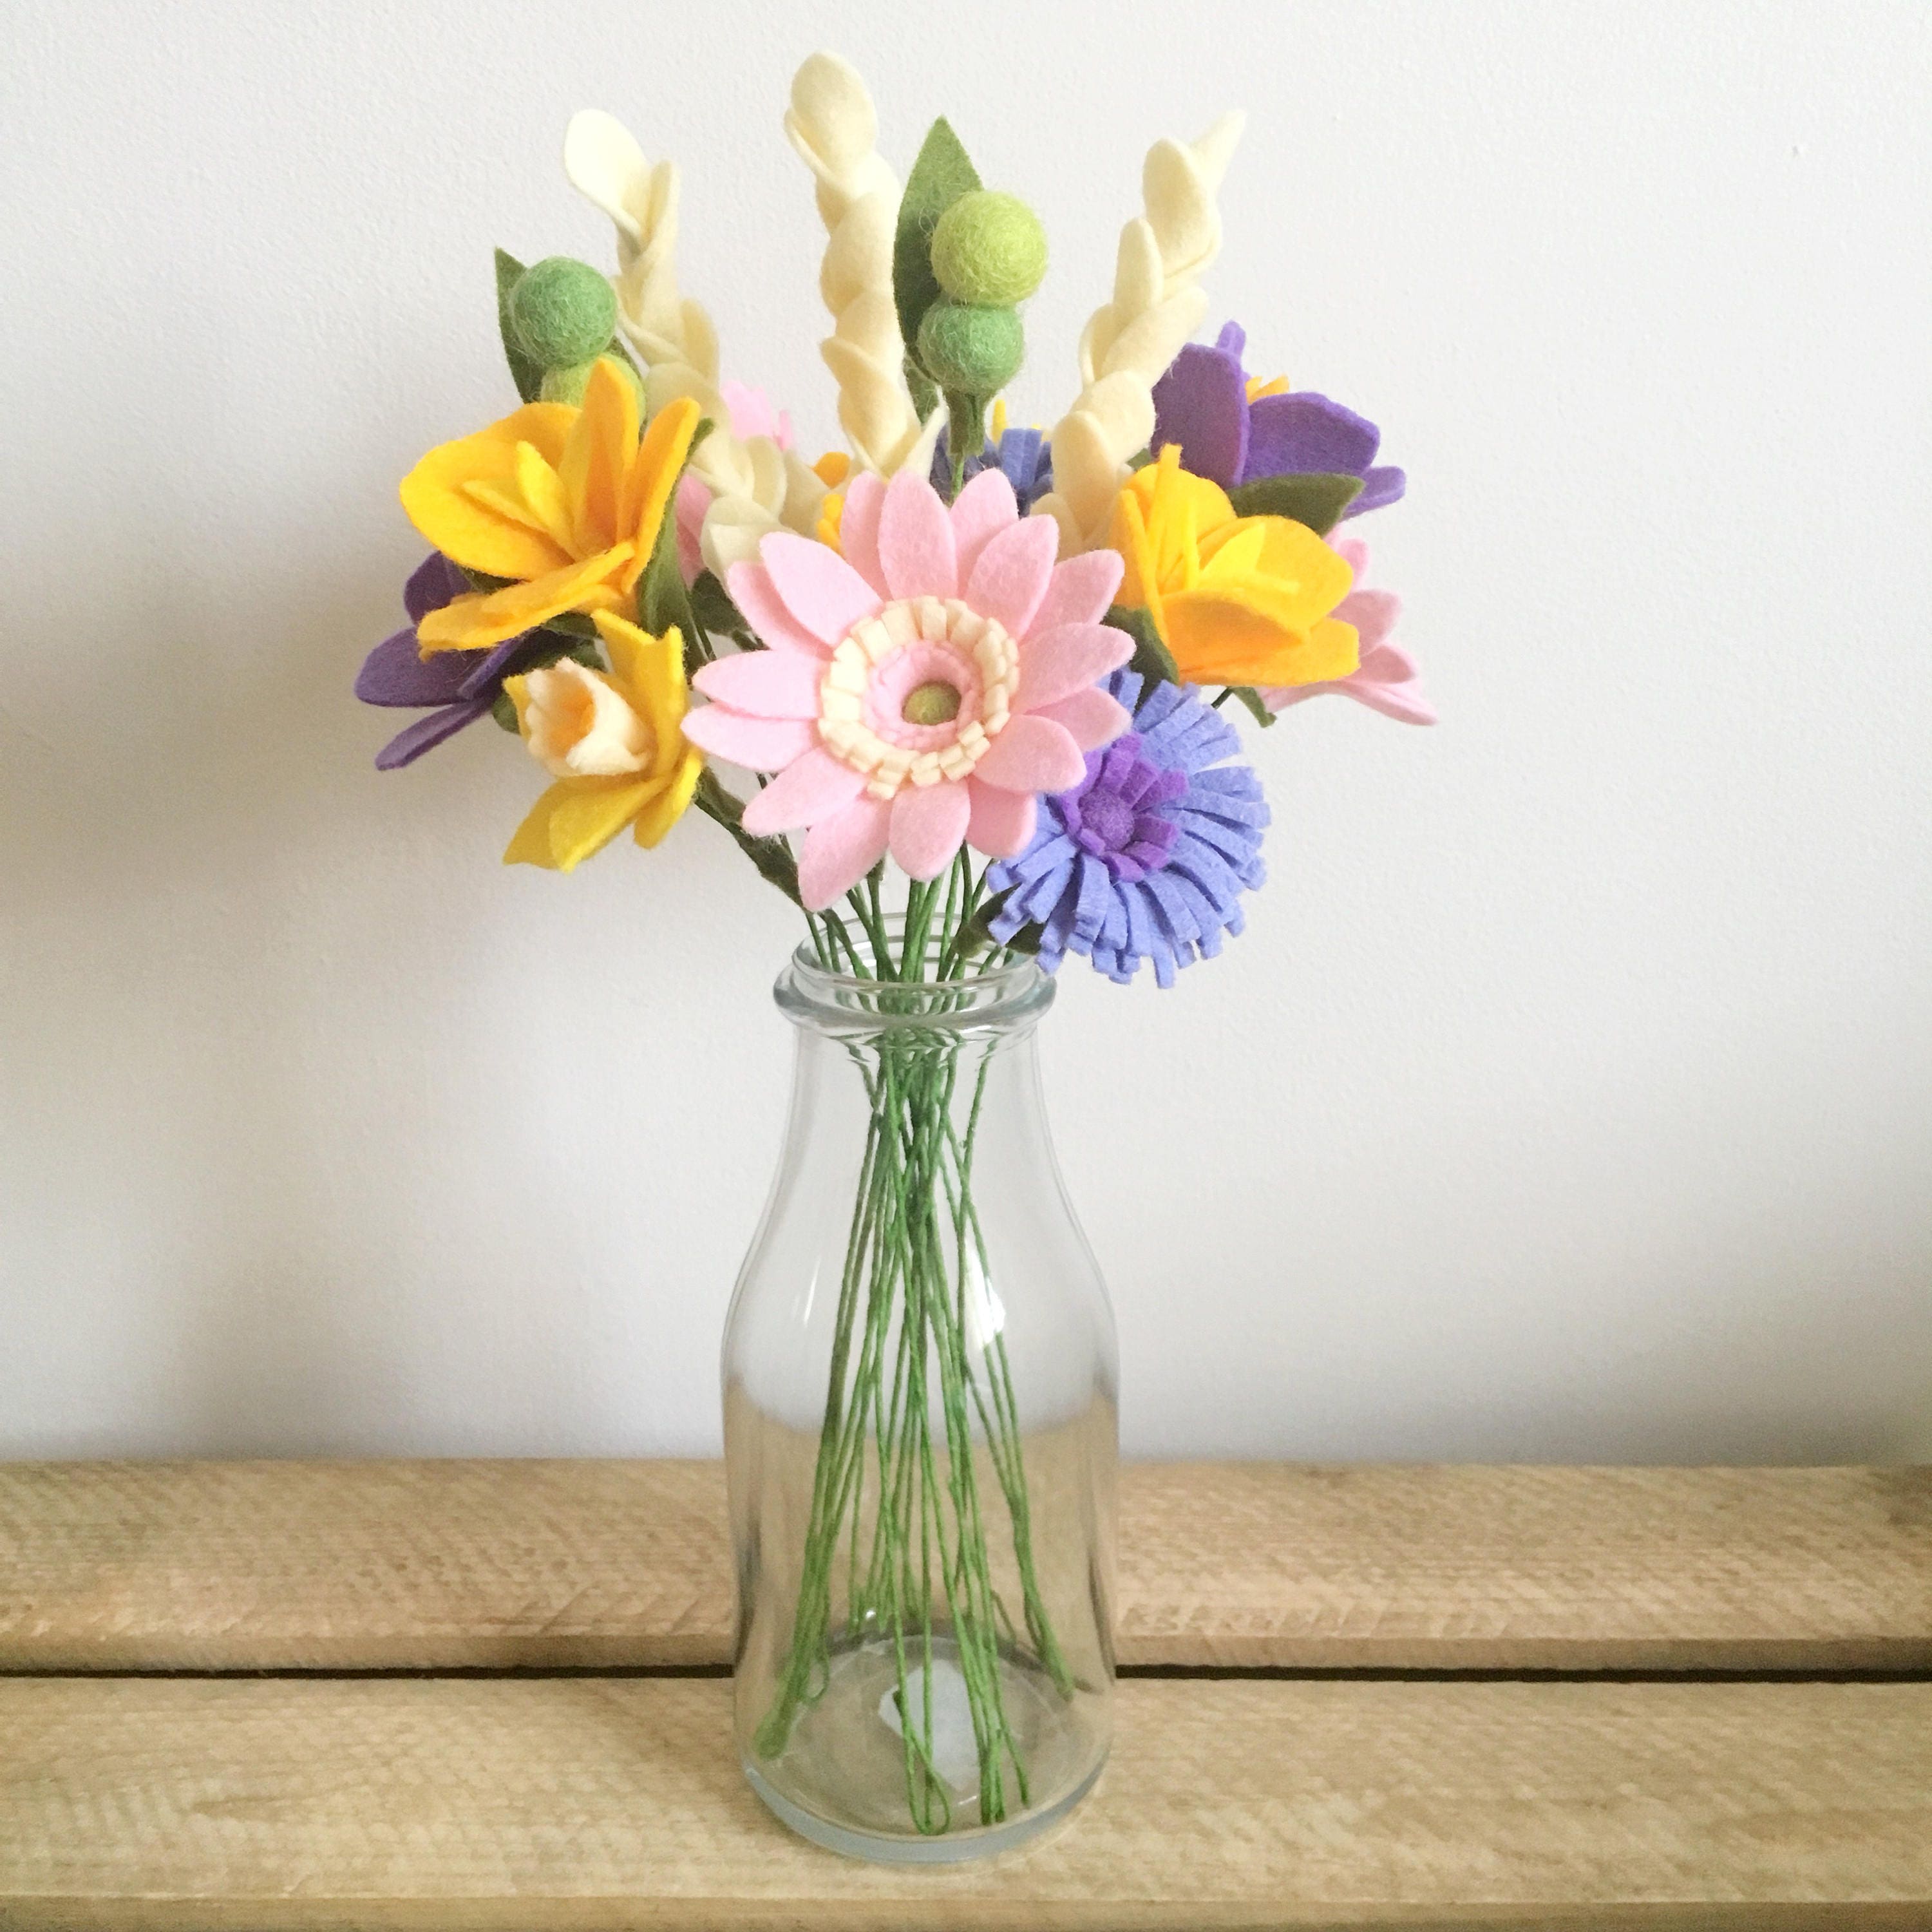 Felt Flower Tutorial - DIY : How to make Easy Felt Flower / Spring